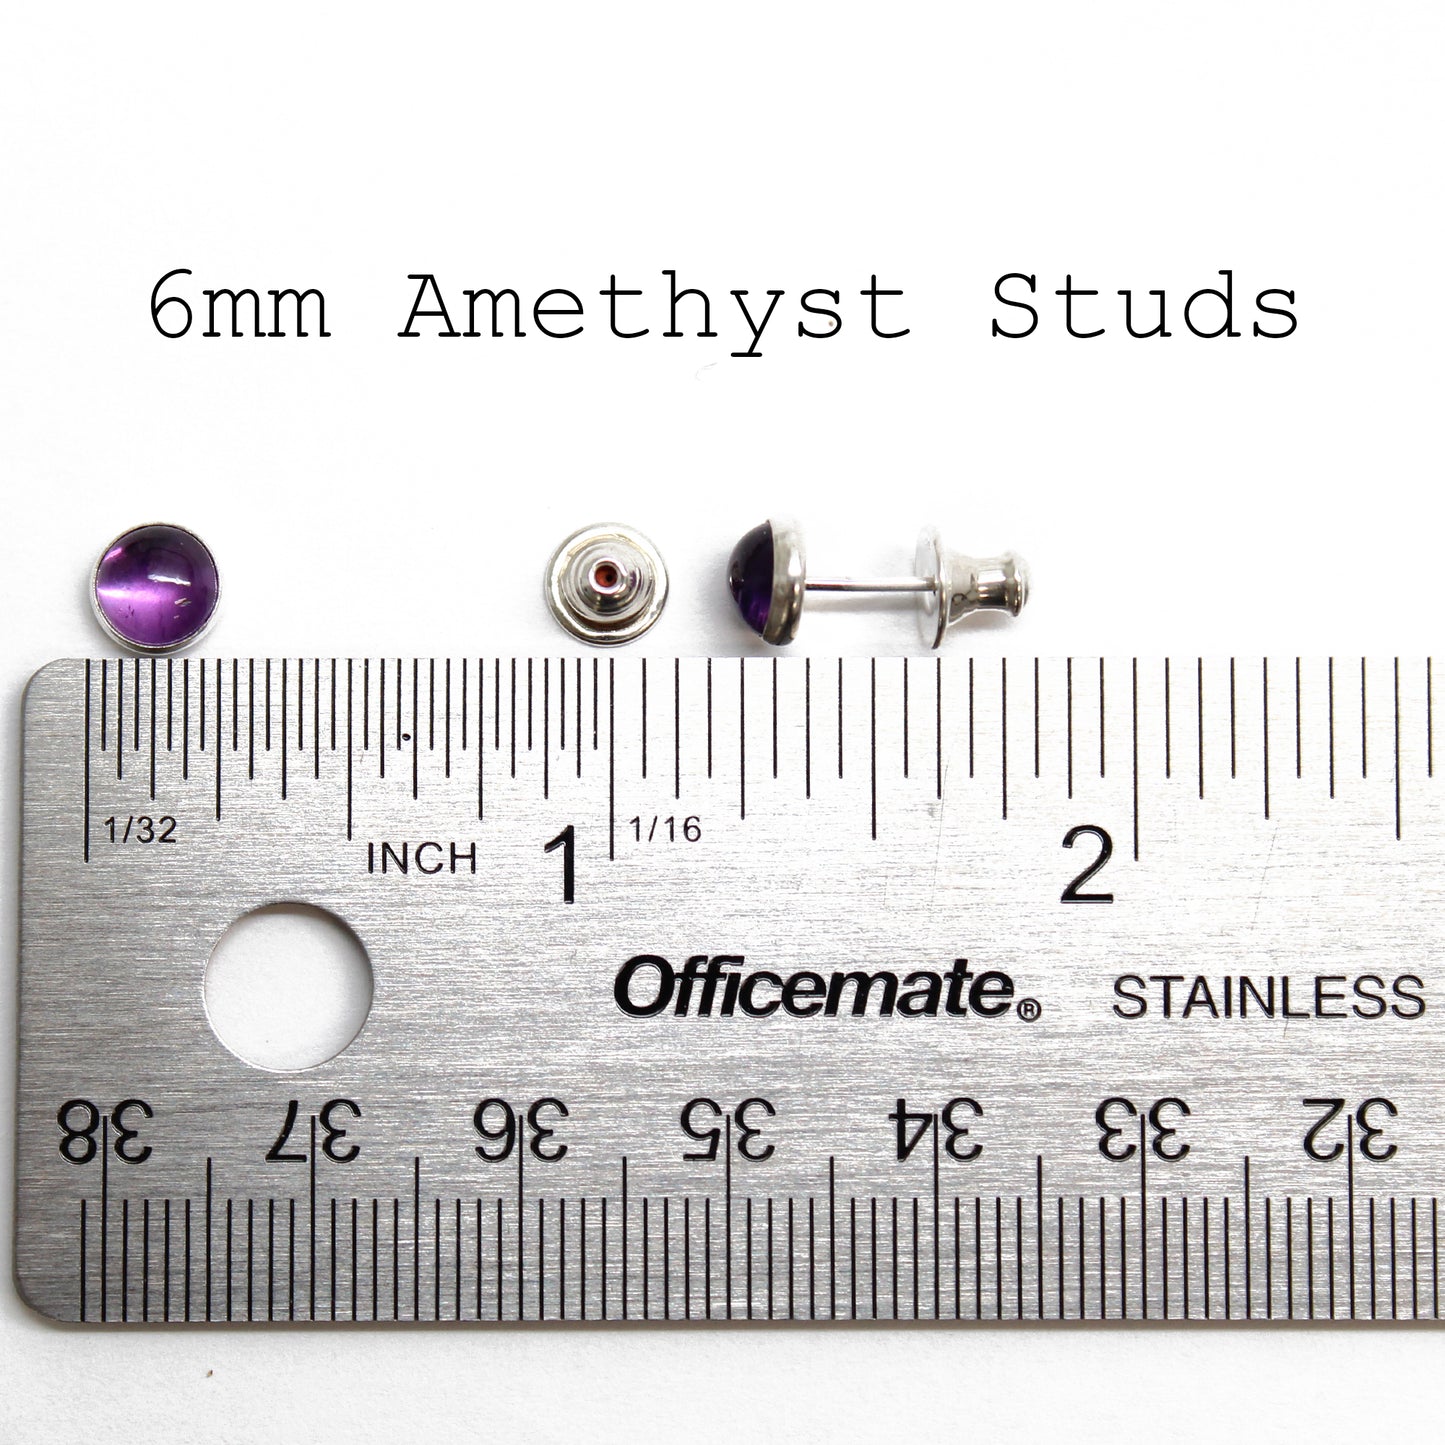 Amethyst Stud Earrings 6mm in Sterling Silver